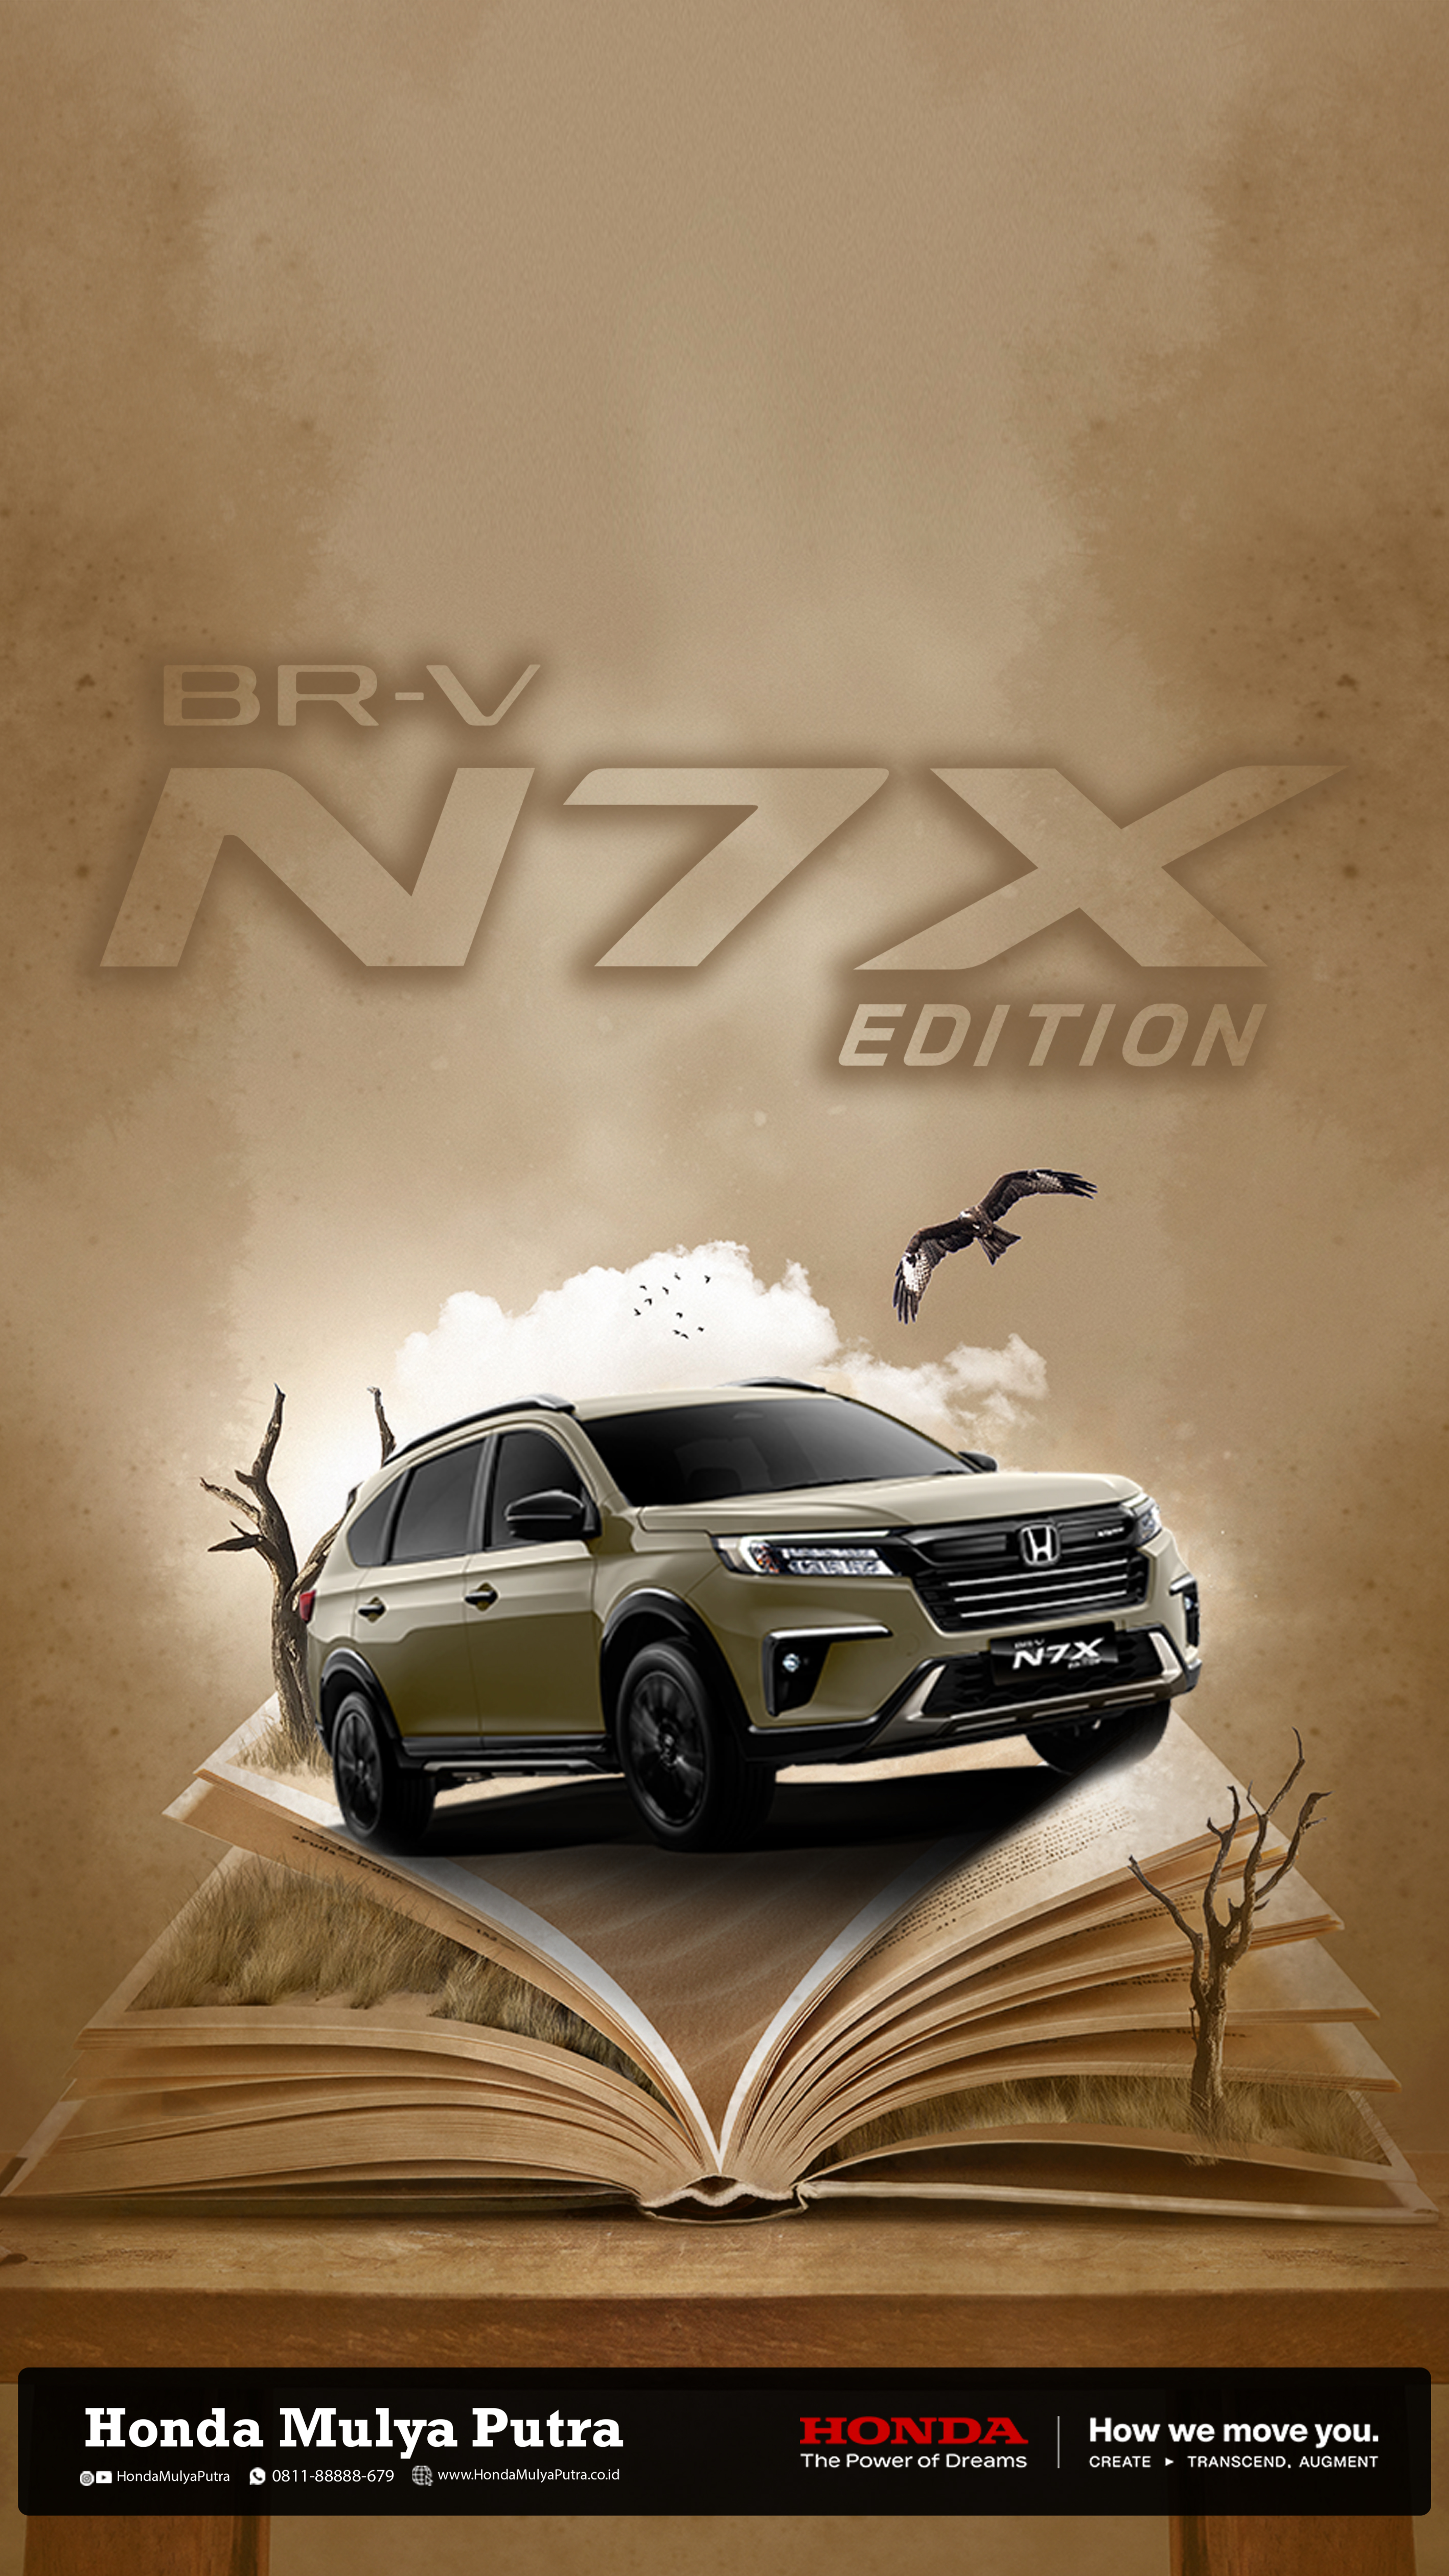 Melangkah Lebih Jauh dengan BR-V N7X EDITION: Eksplorasi Fitur Terkini dan Kinerja Unggul